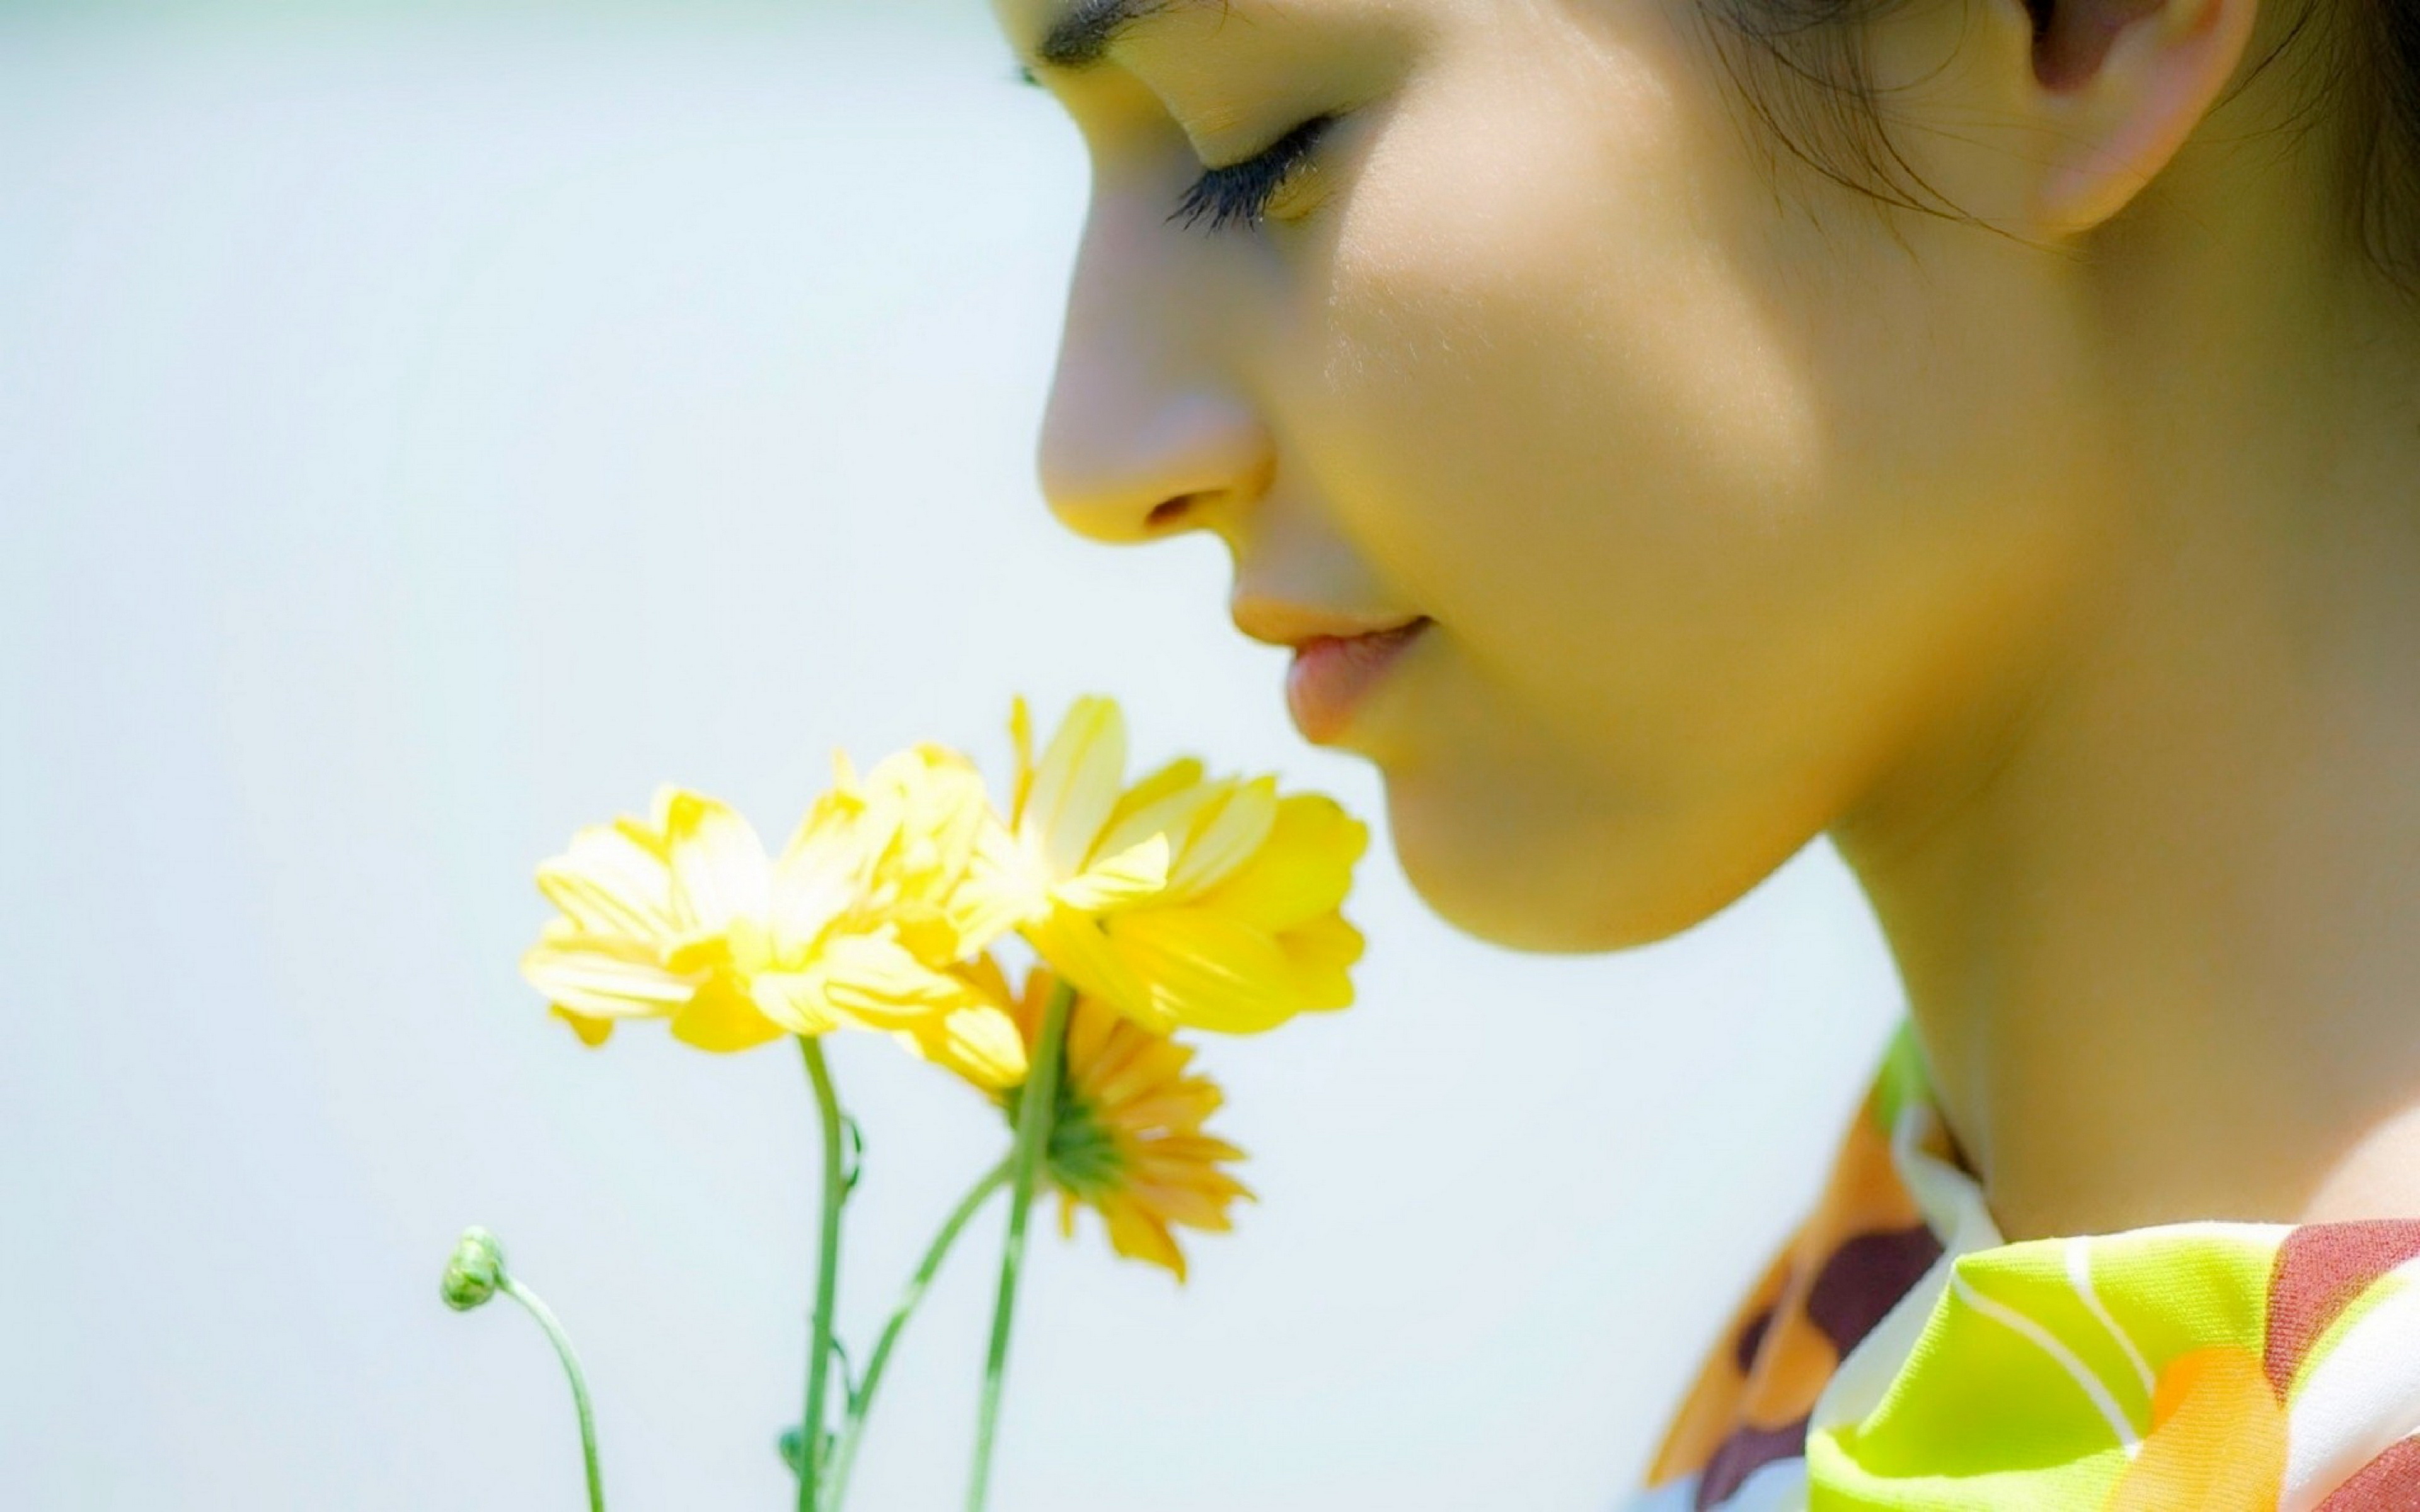 Сильный приятный запах. Обоняние. Девушка нюхает цветы. Приятный запах цветов. Человек с цветами.